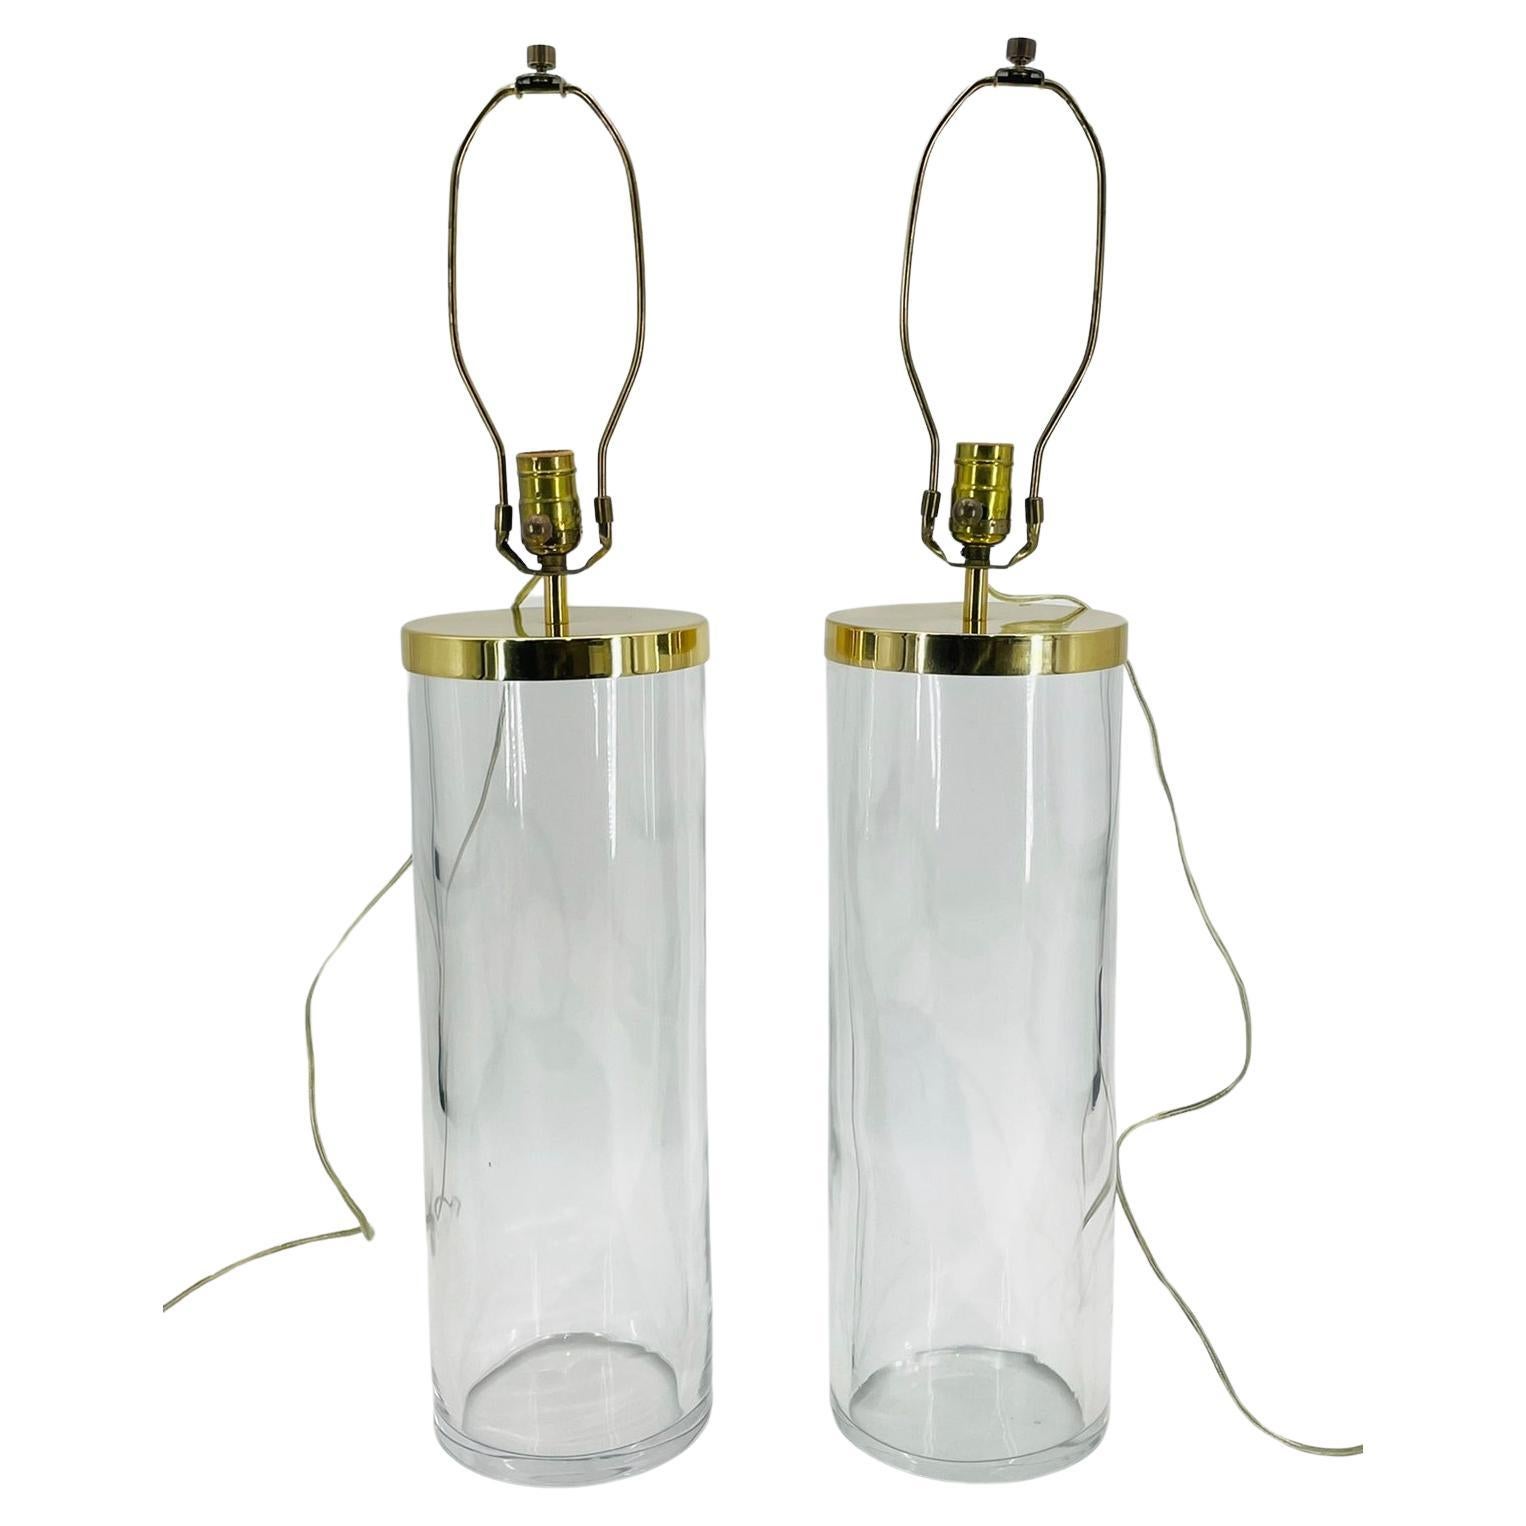 Voici la paire de lampes de table vintage en verre et laiton de Chapman, USA, datant de l'époque sophistiquée des années 1970. Ces lampes exquises respirent l'élégance intemporelle et rehausseront sans effort n'importe quel espace grâce à leur